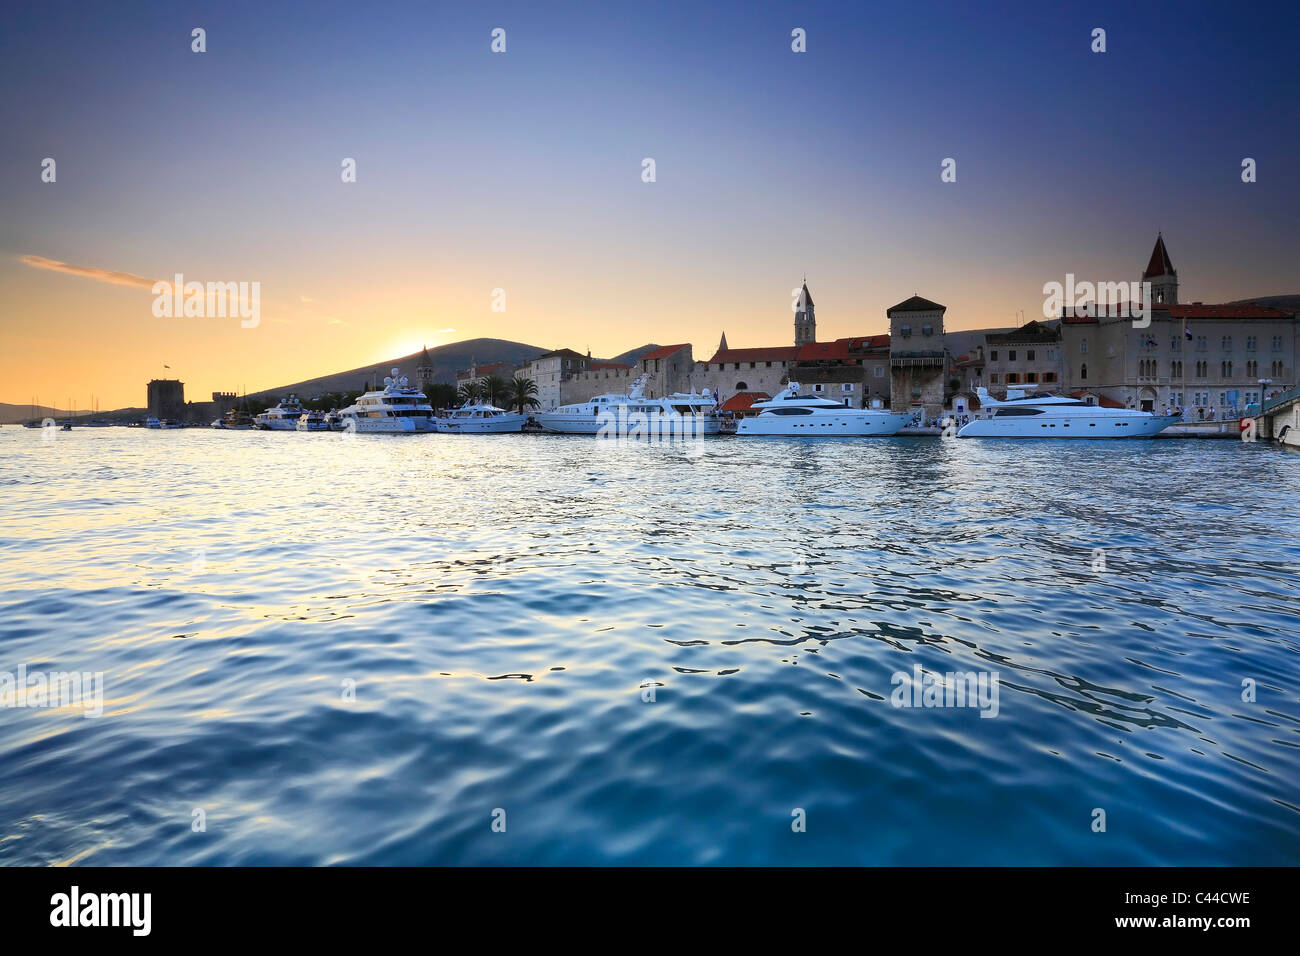 Trogir at sunset - Croatia Stock Photo